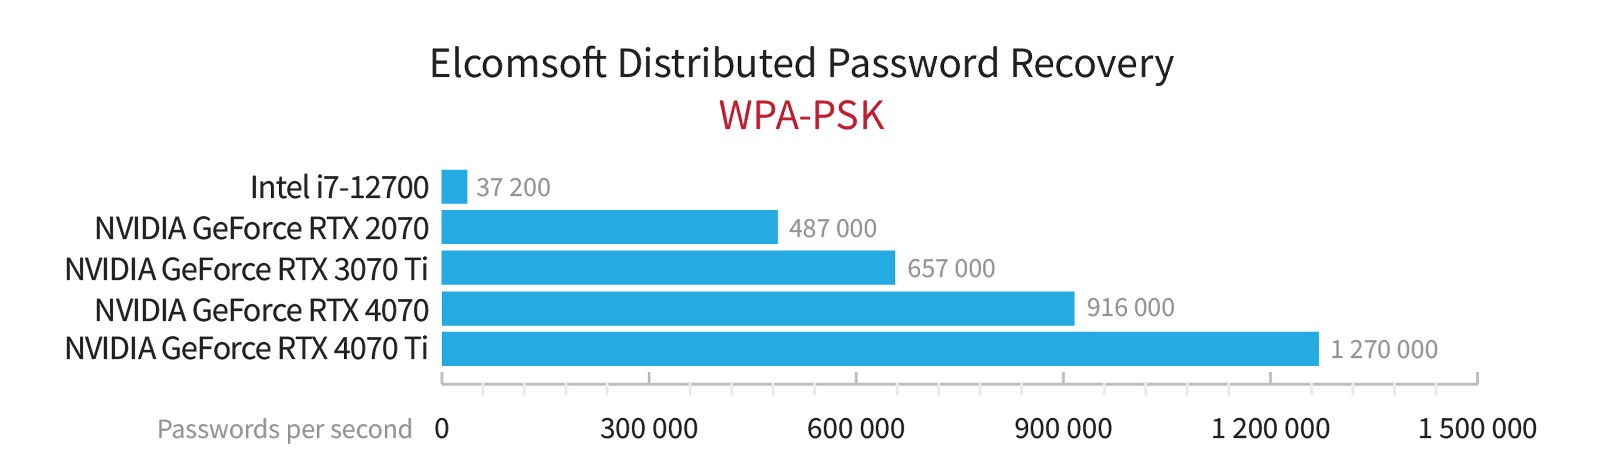 Resultados de rendimiento WPA-PSK de las series RTX 4000 y 3000.